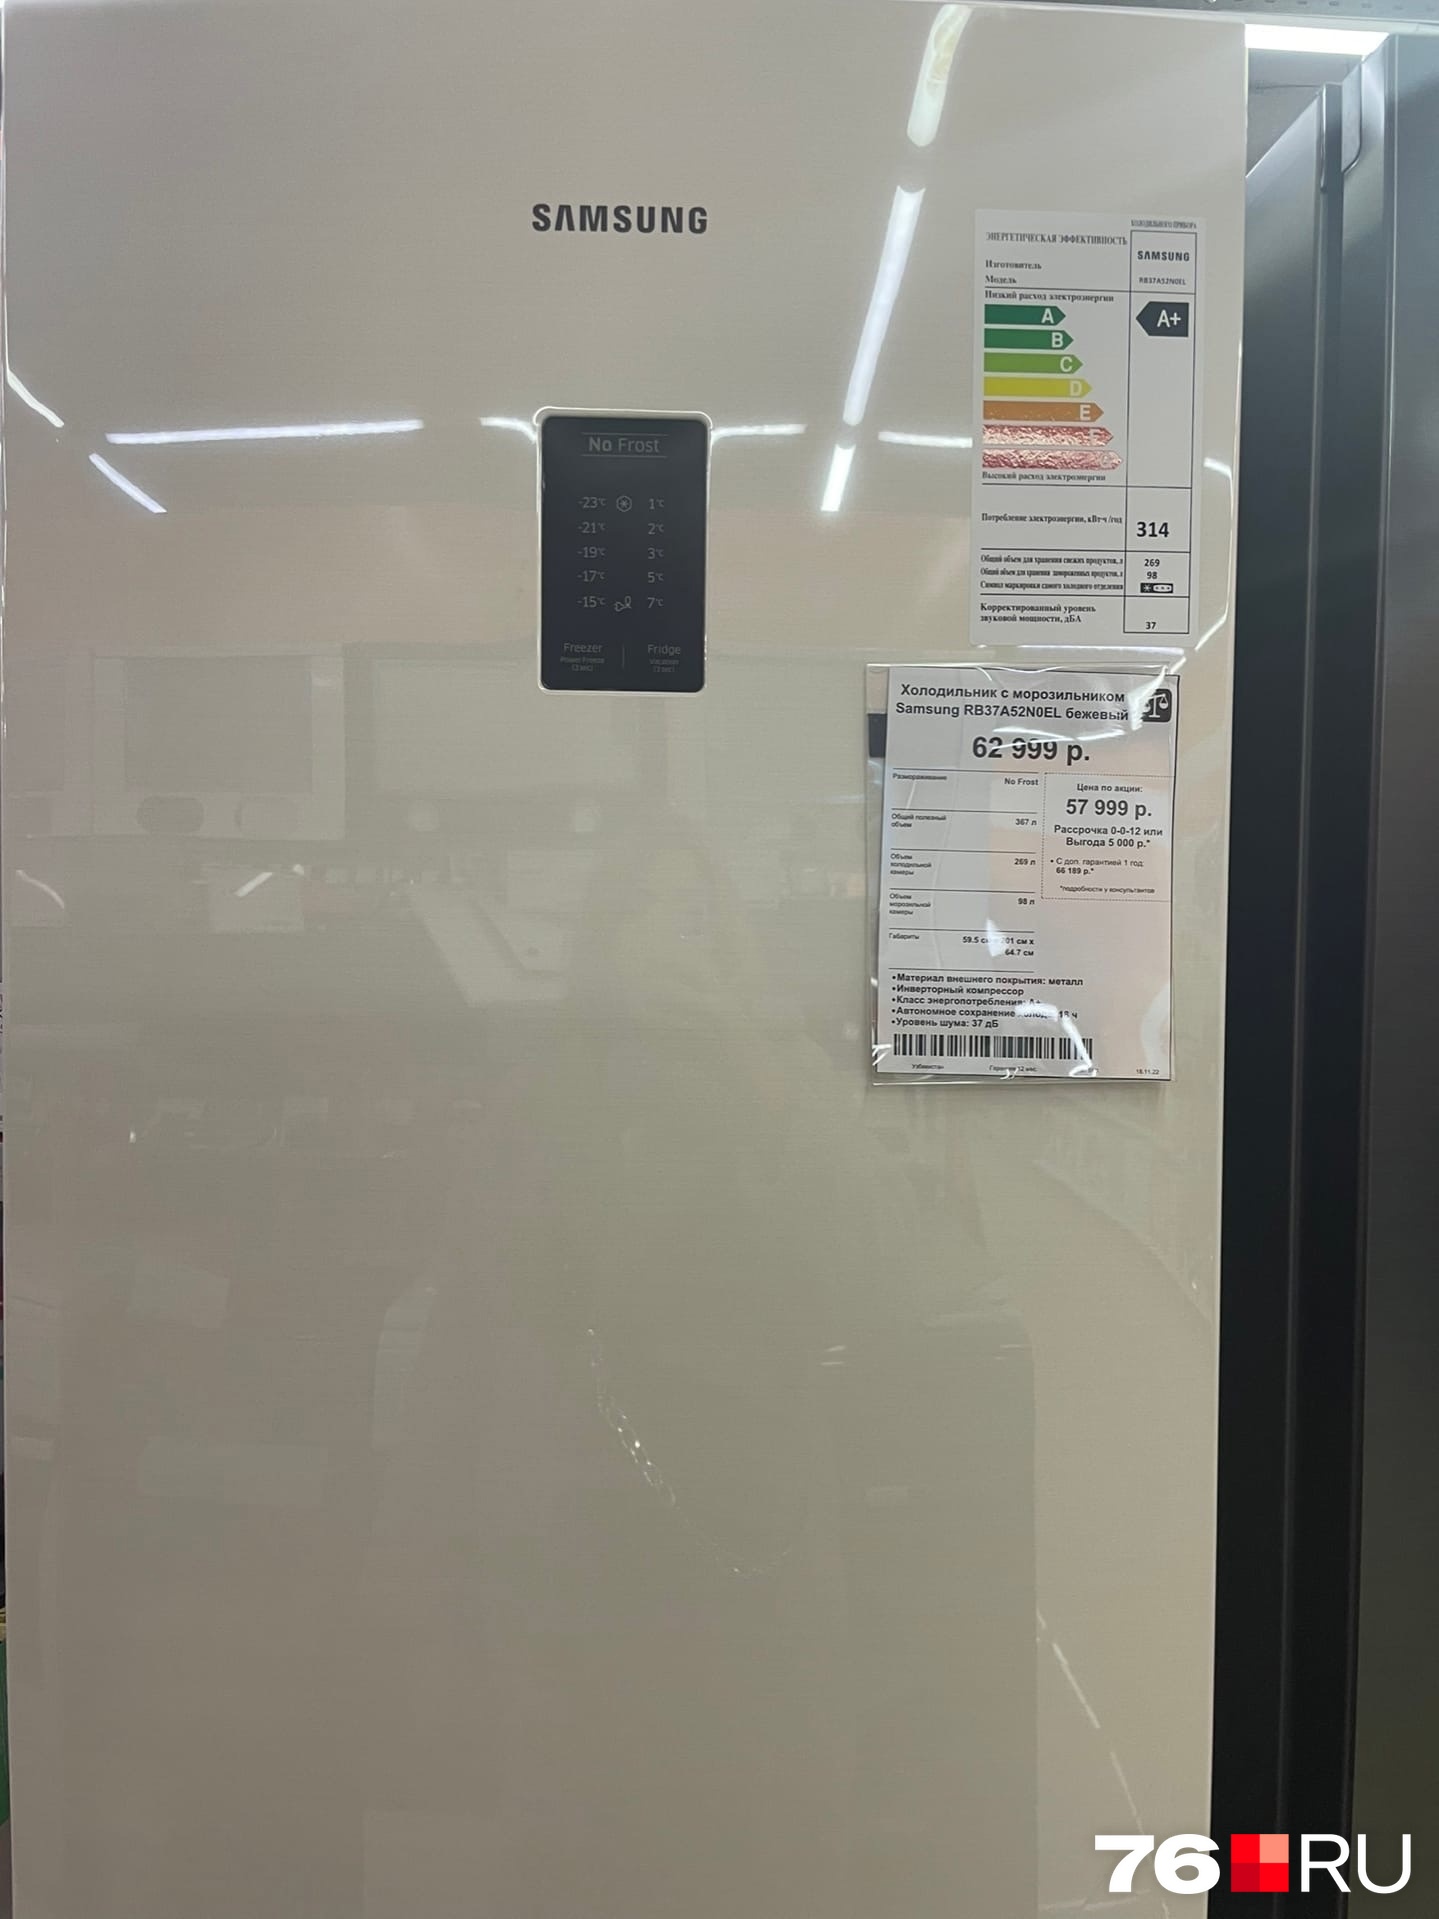 Холодильник от Samsung можно приобрести за 63 тысячи рублей